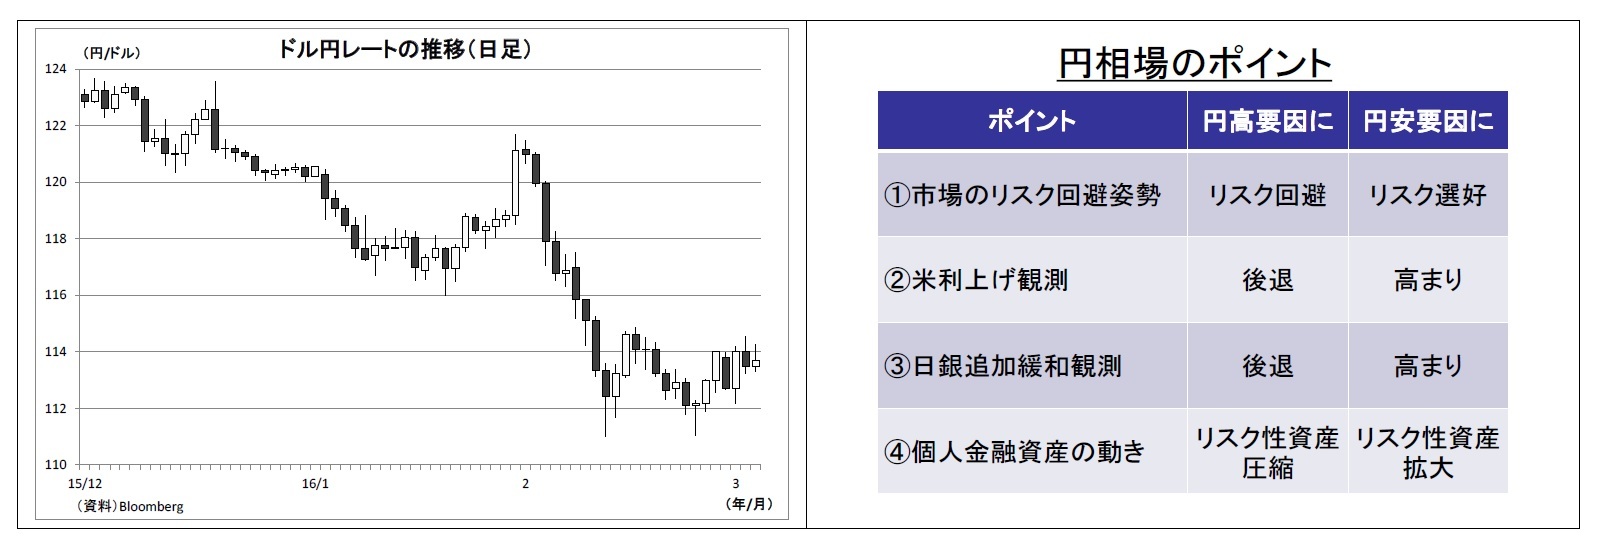 ドル円レートの推移(日足)/円相場のポイント